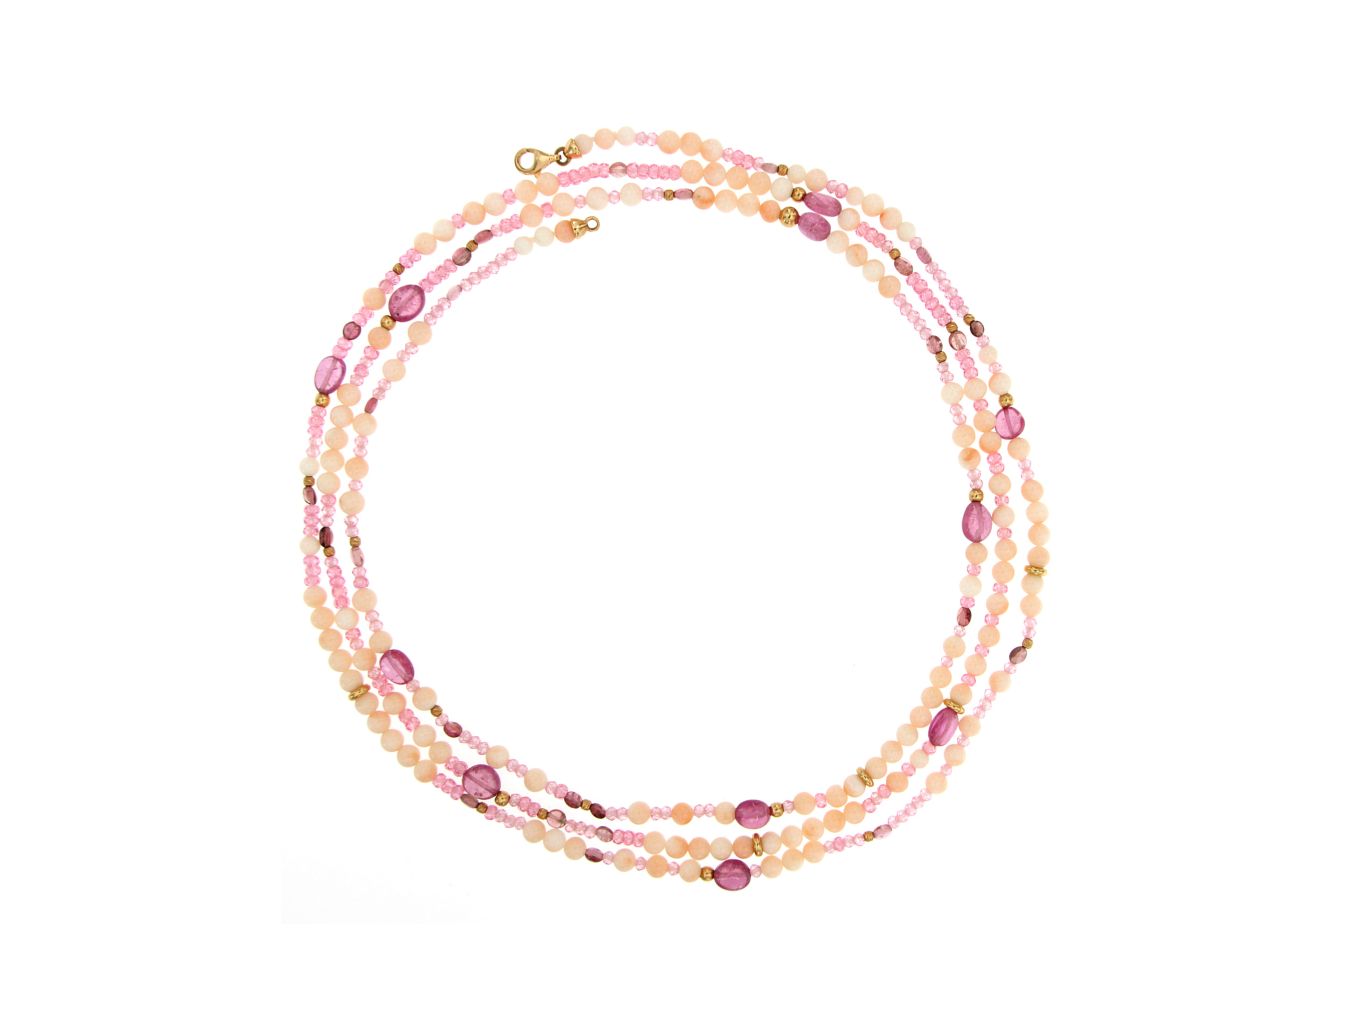 Collana in corallo pelle d'angelo, zirconi e zaffiri rosa, chiusura oro rosa 750 - 4